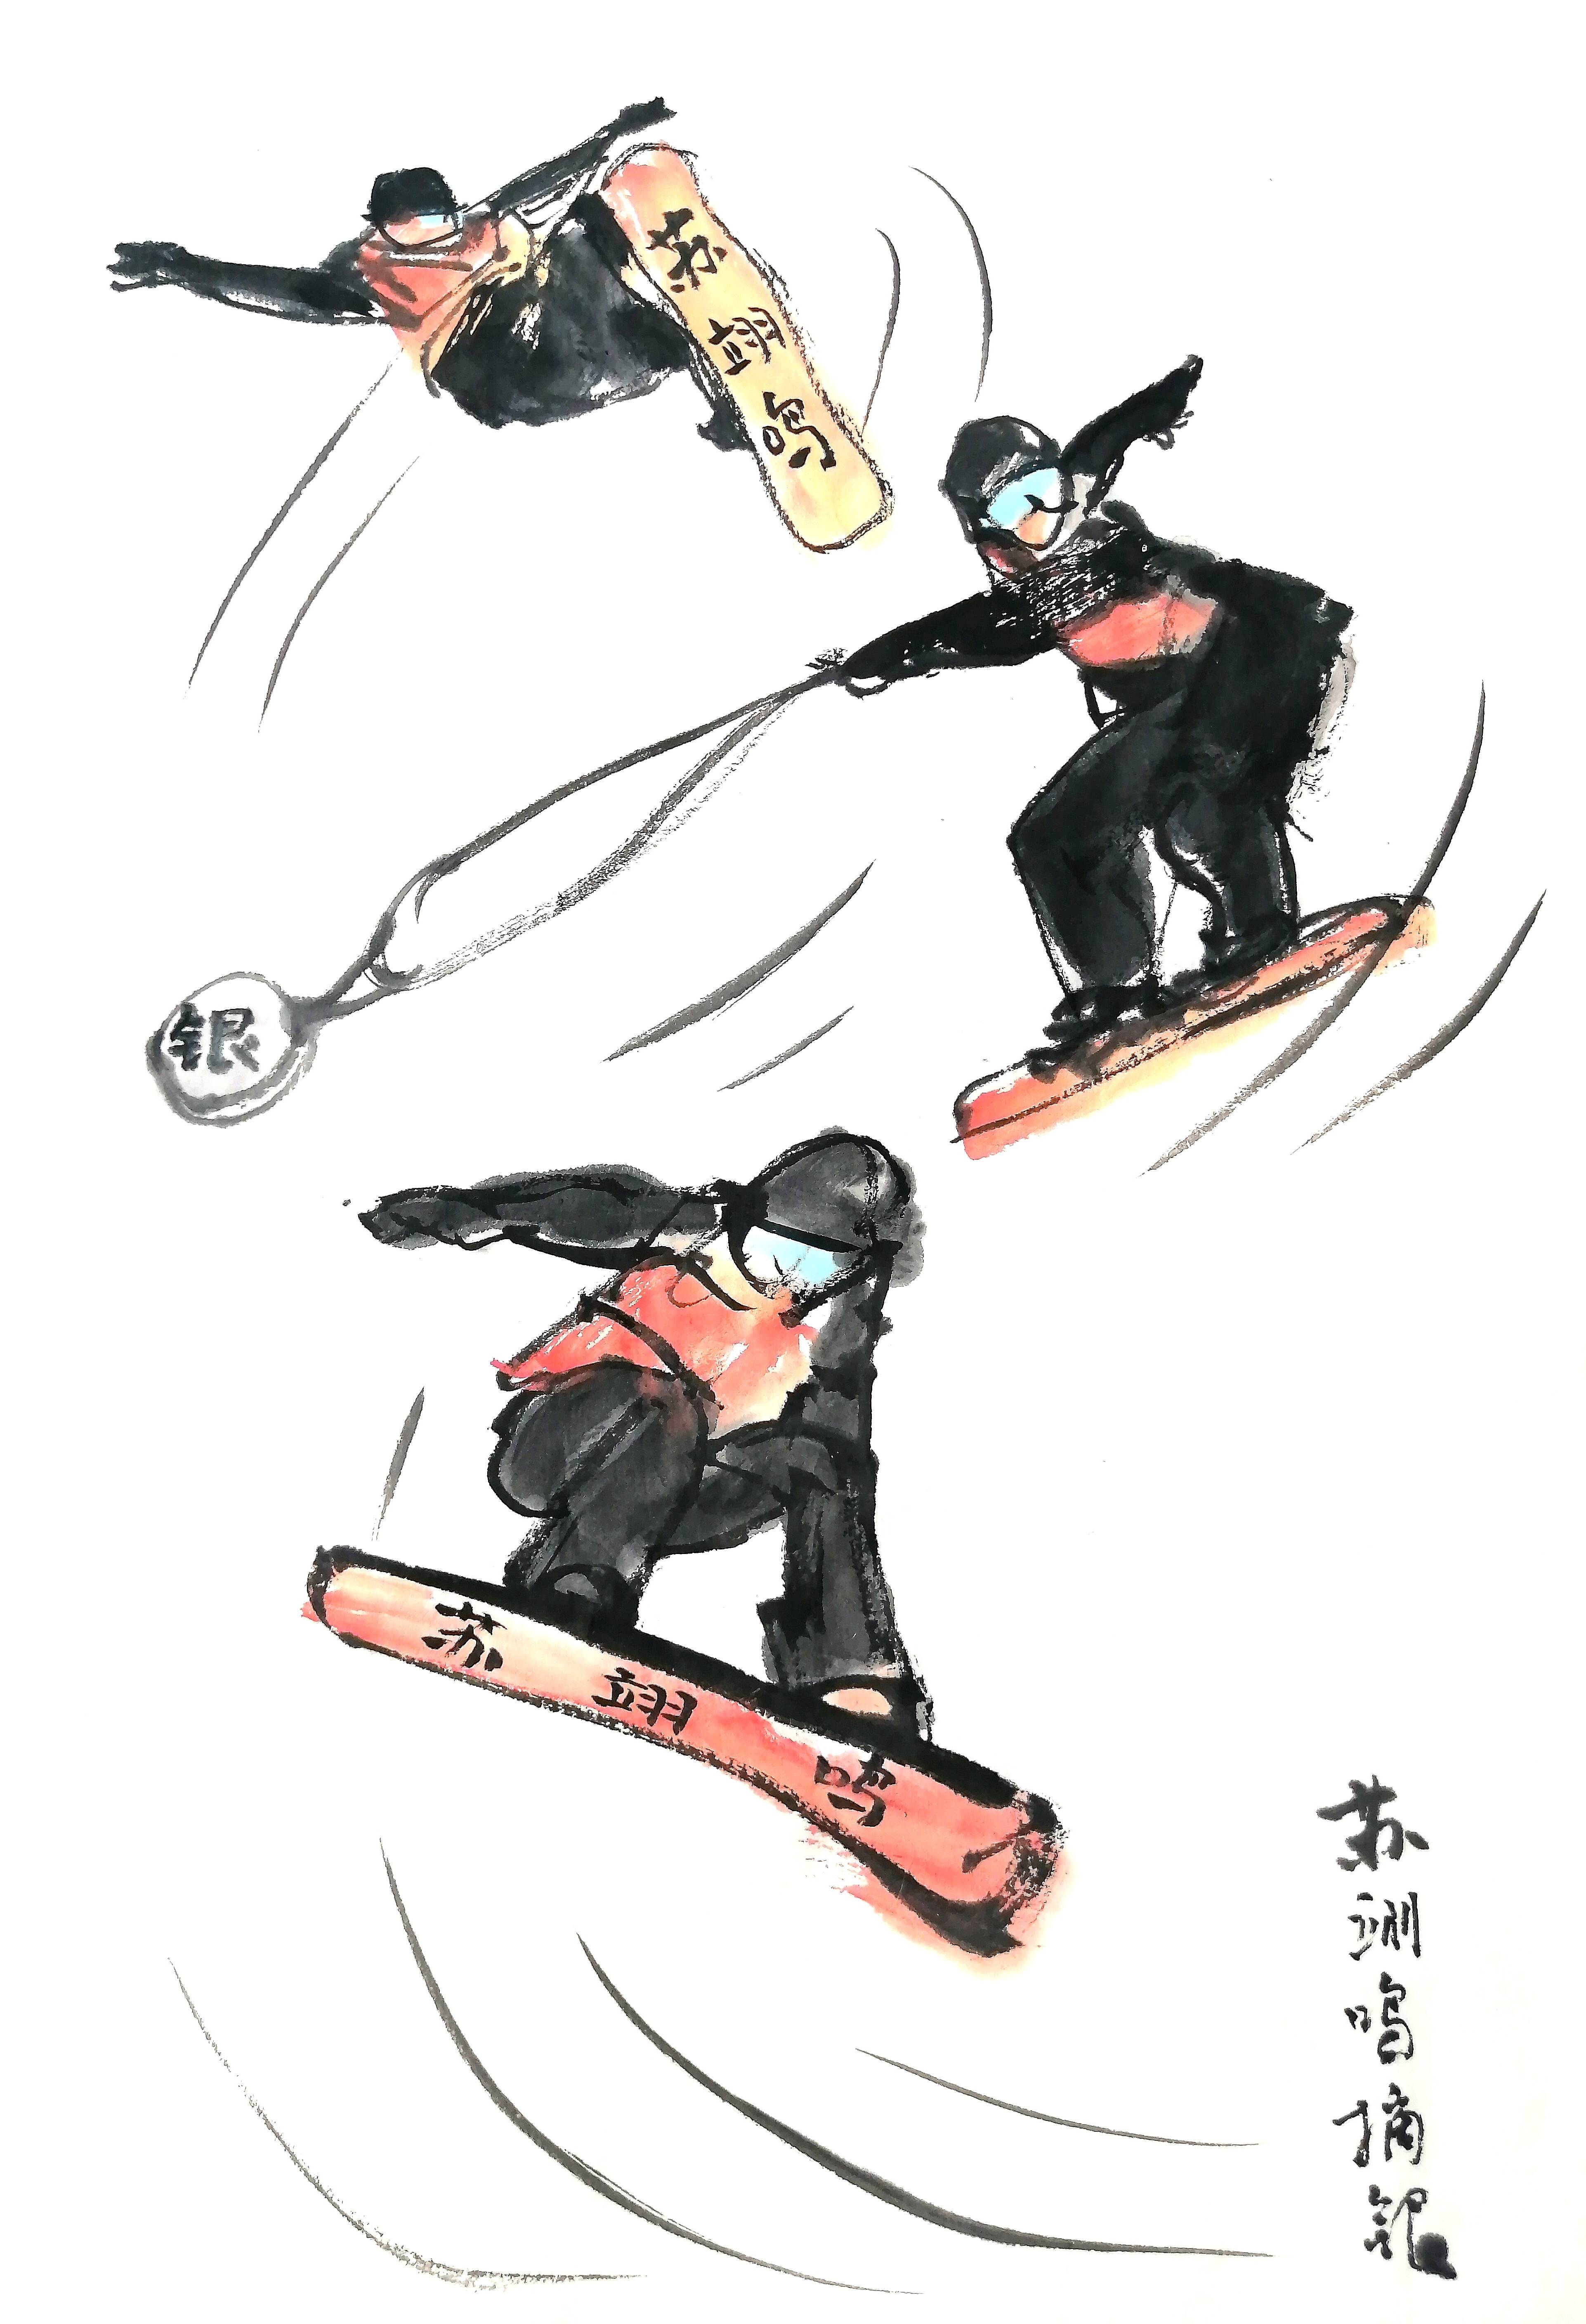 2022北京冬奥会素描图片